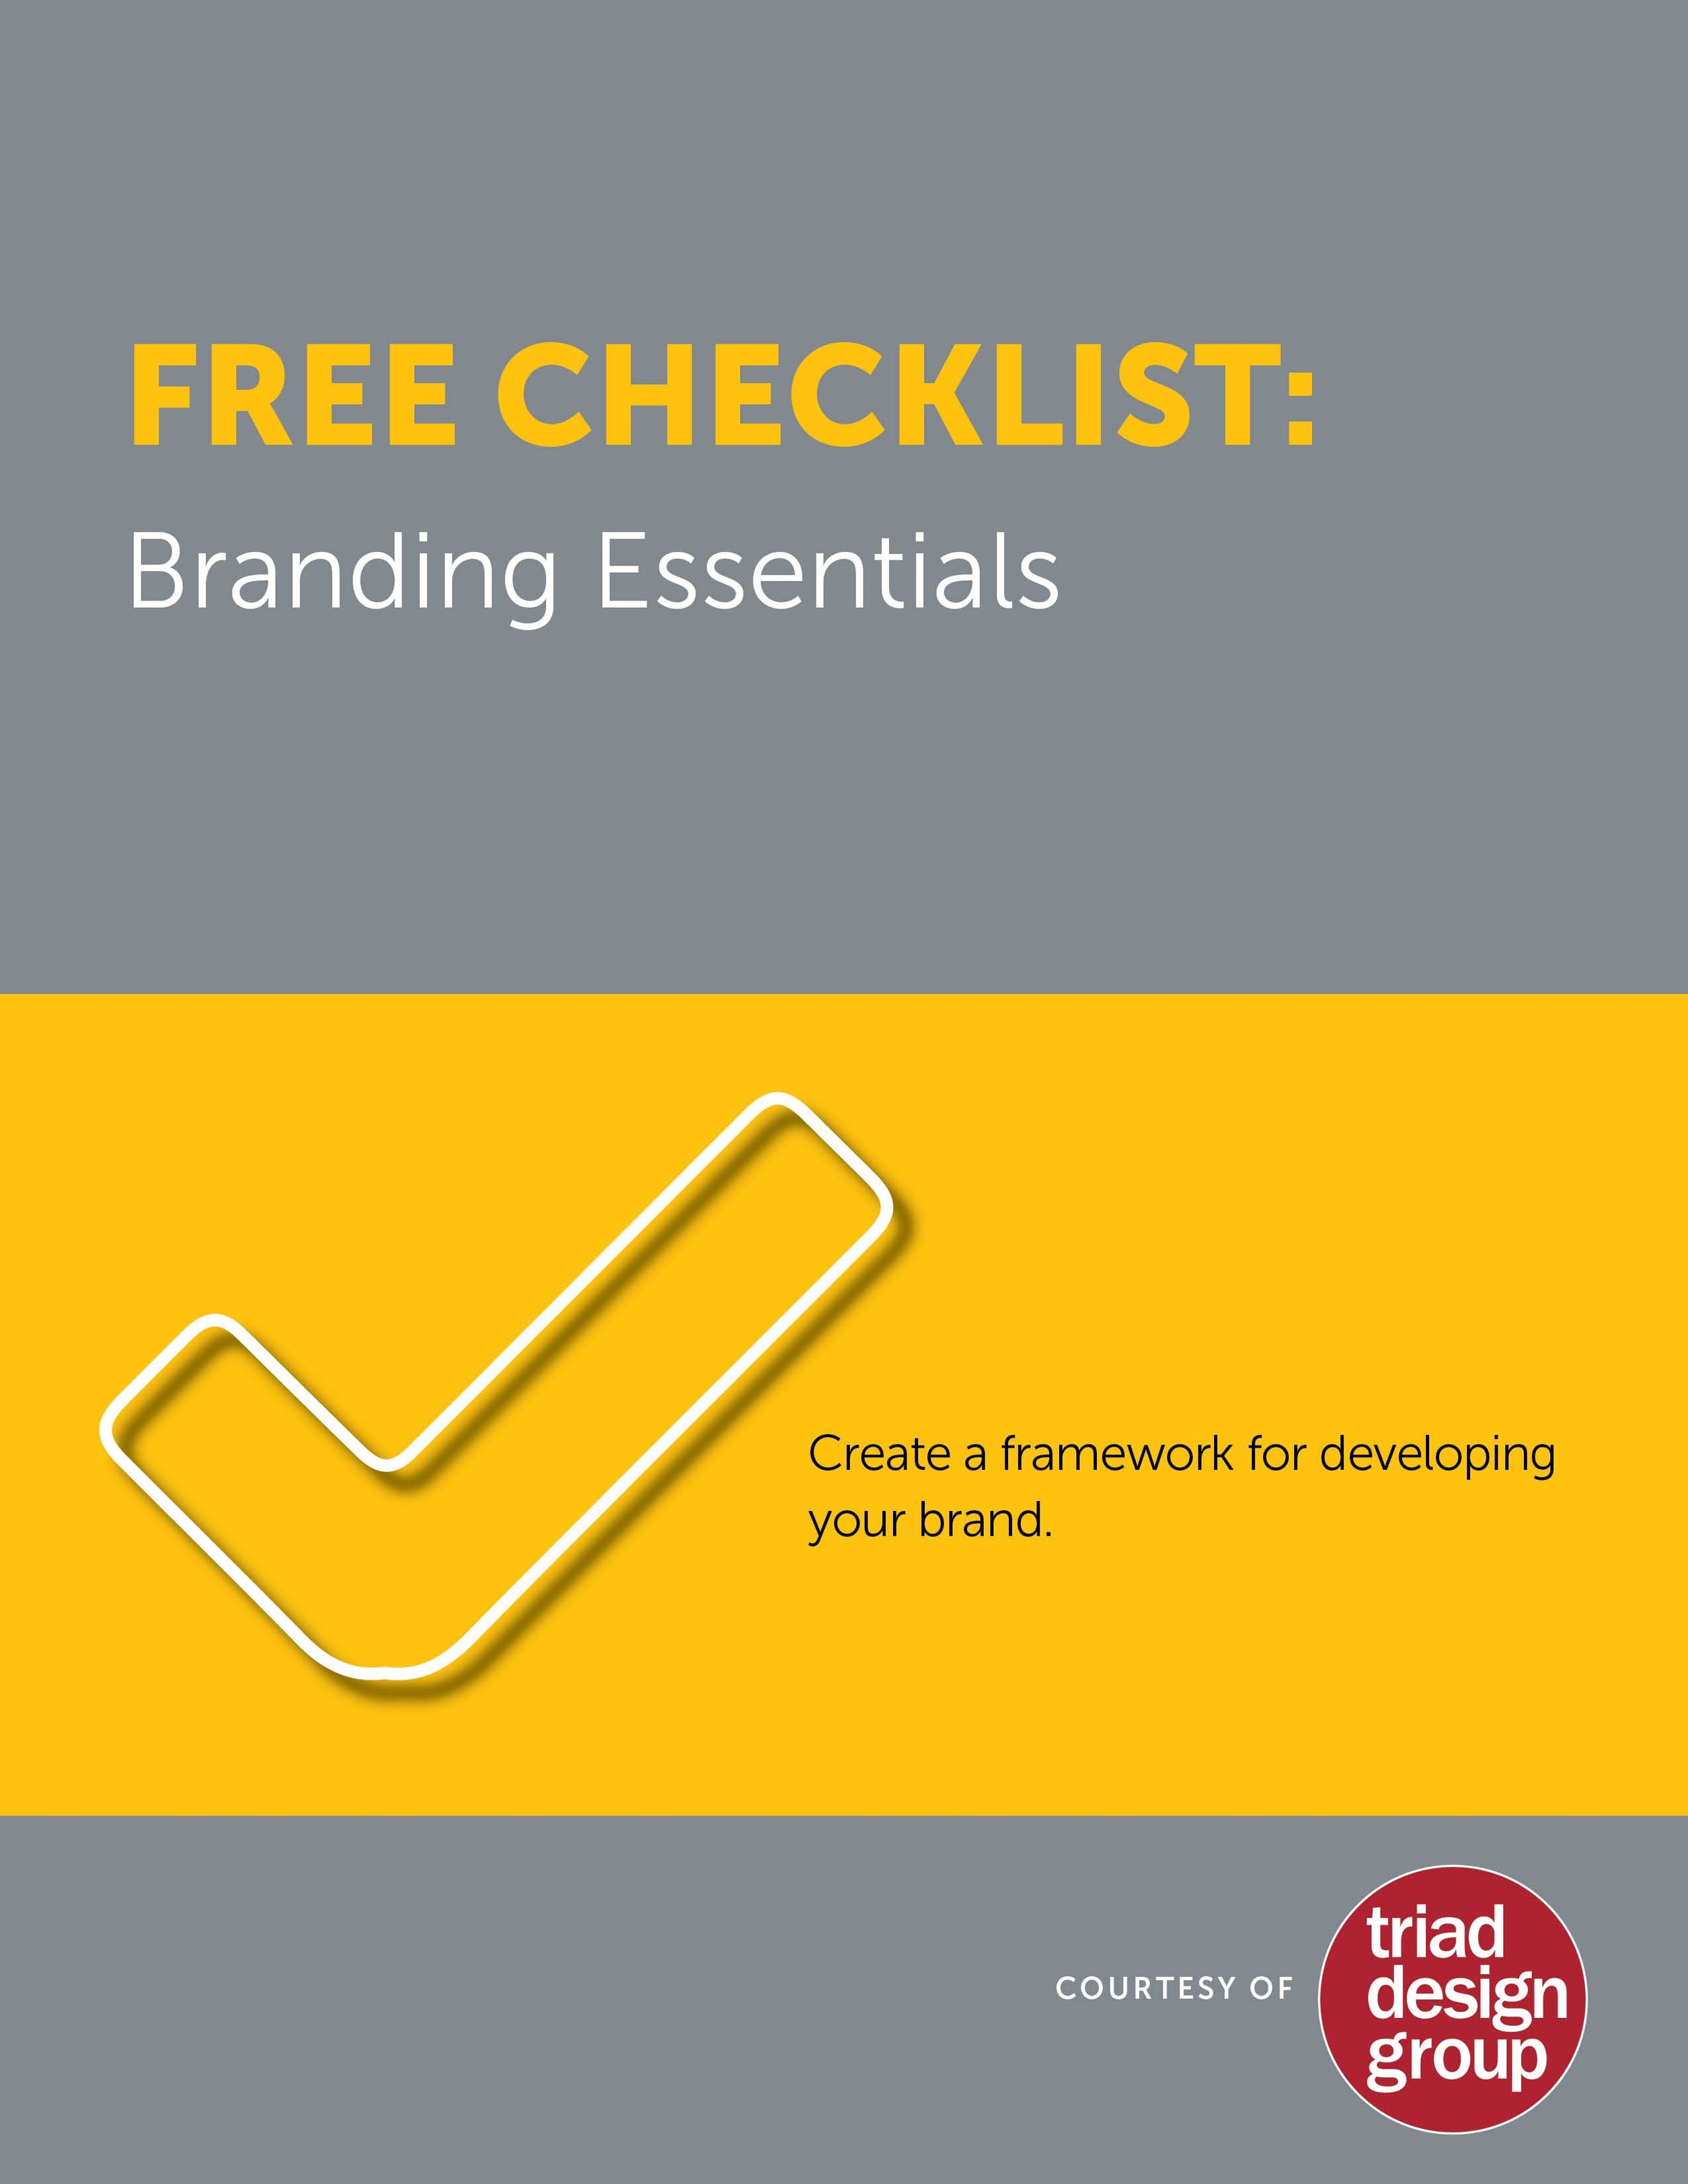 Triad_Design_Free_Branding_Checklist.jpg